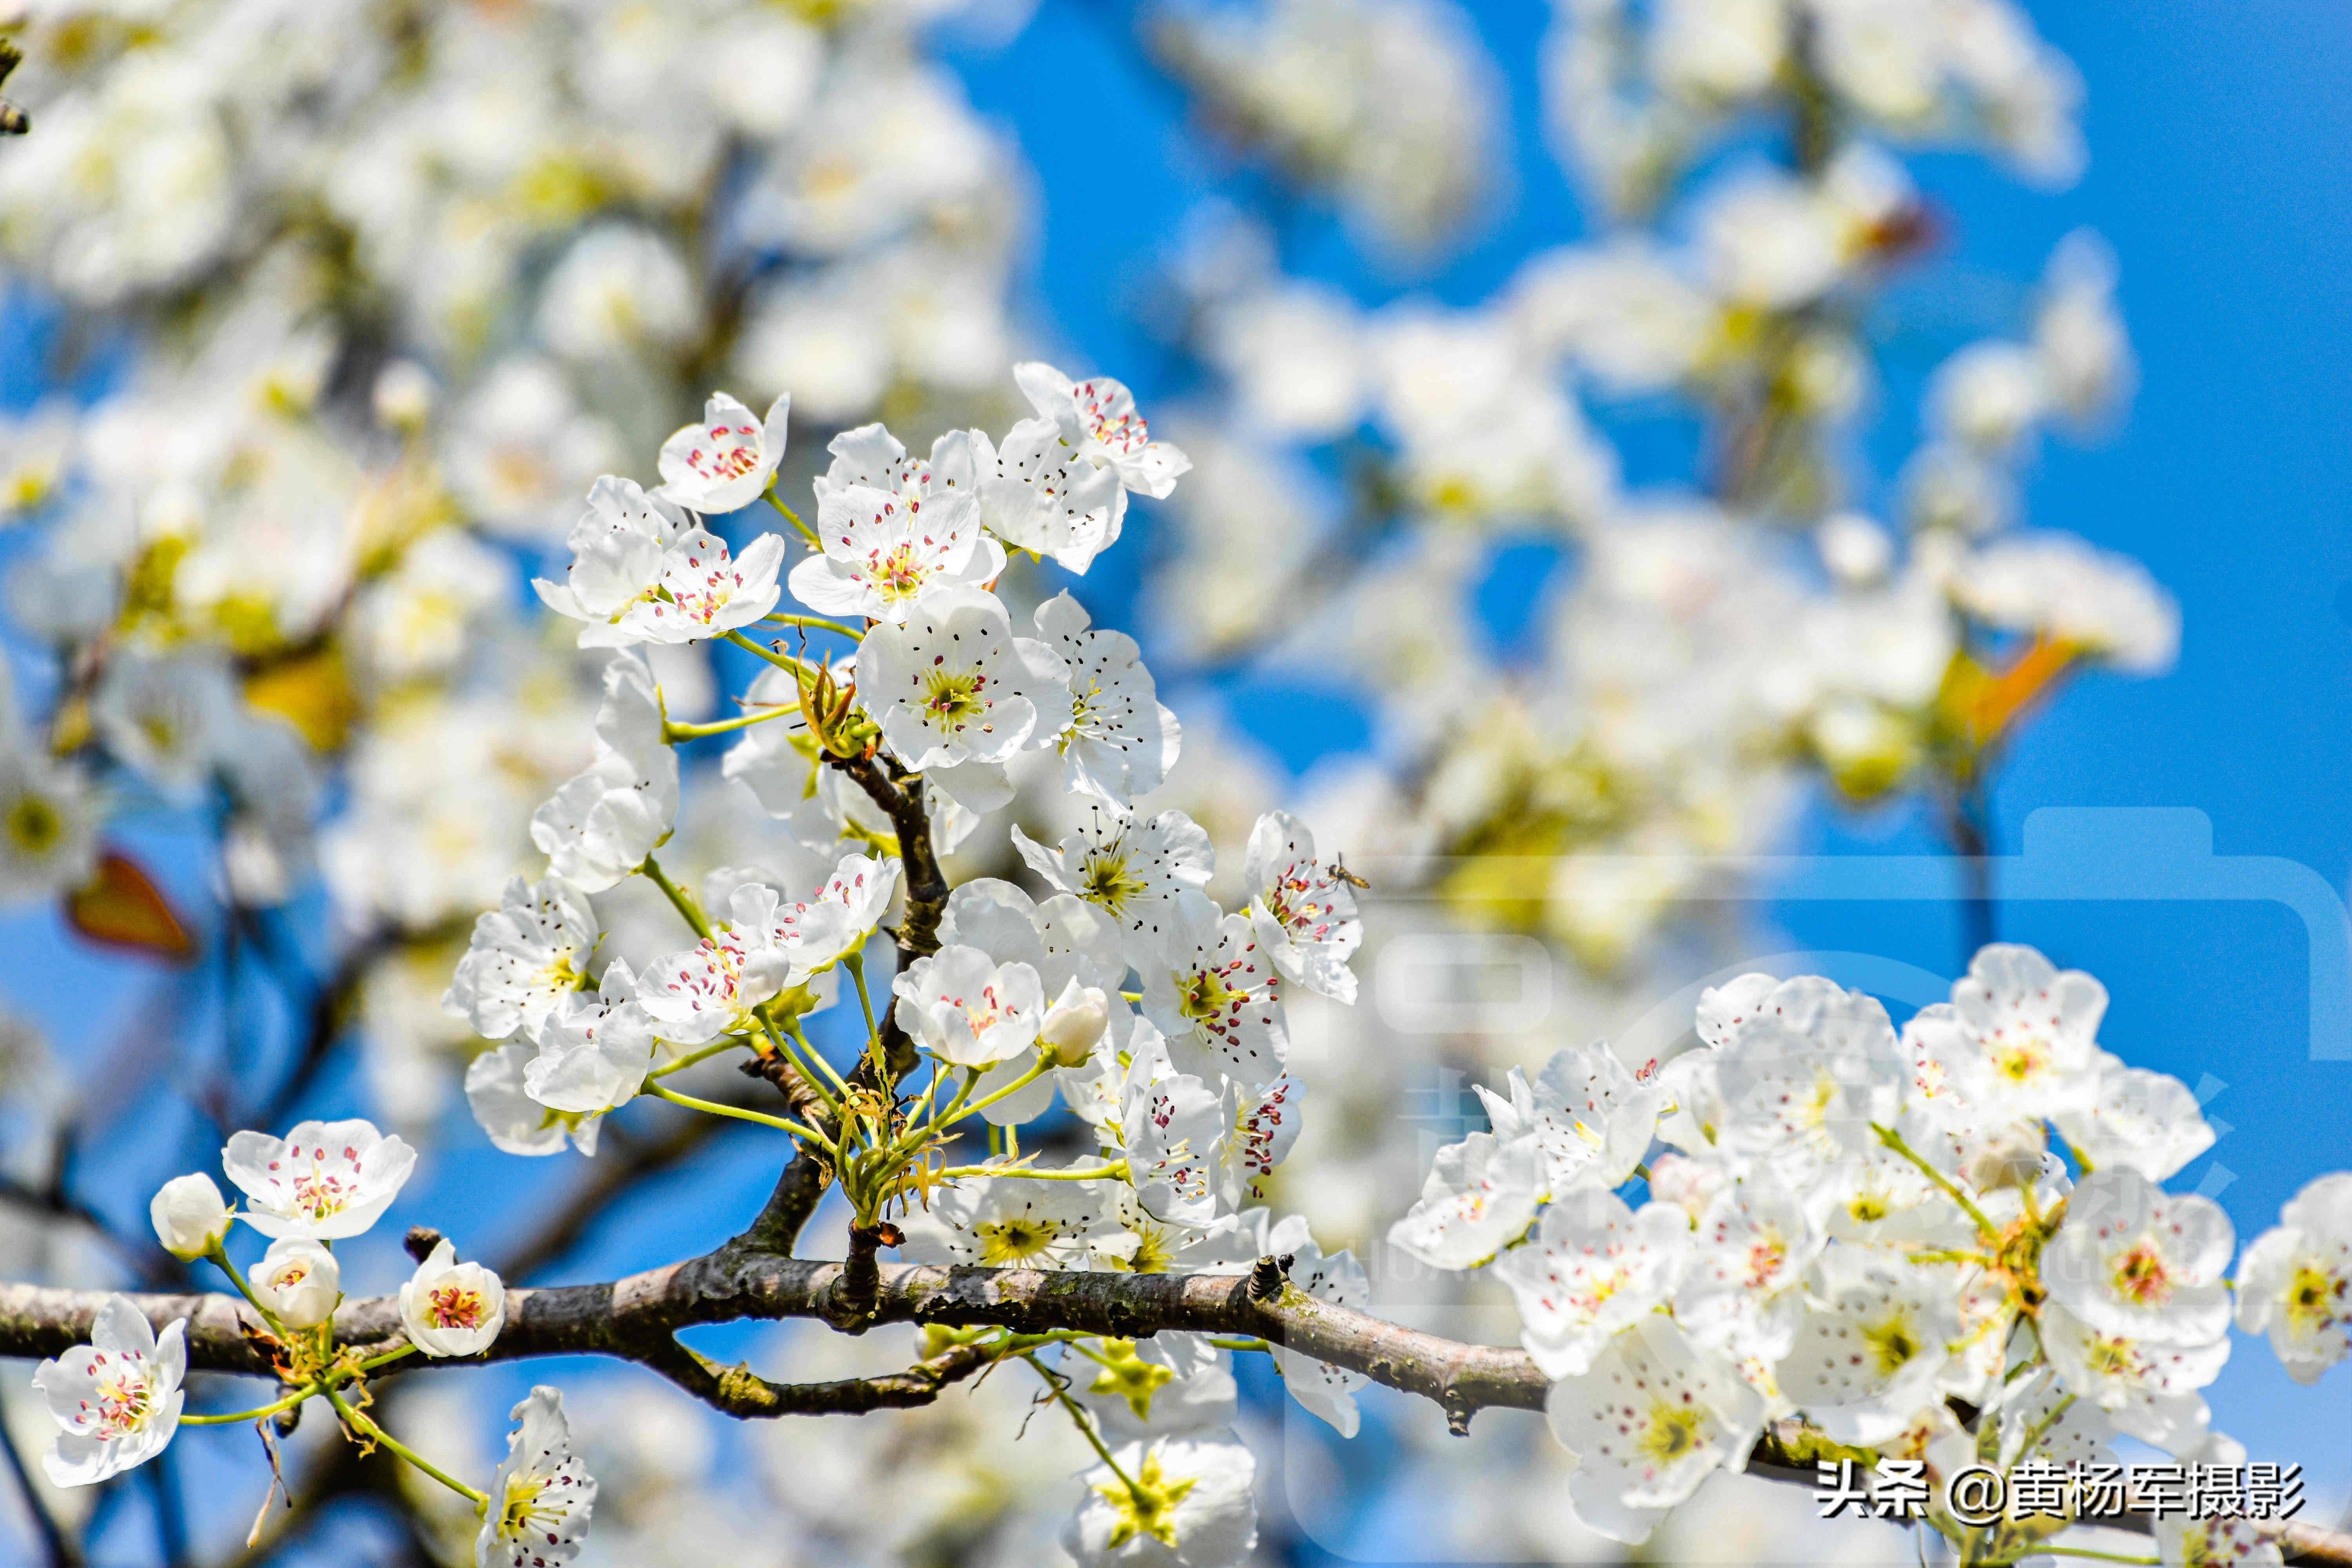 蓝天下洁白如雪的梨花,清香艳丽的花朵非常漂亮,花开靓艳含香